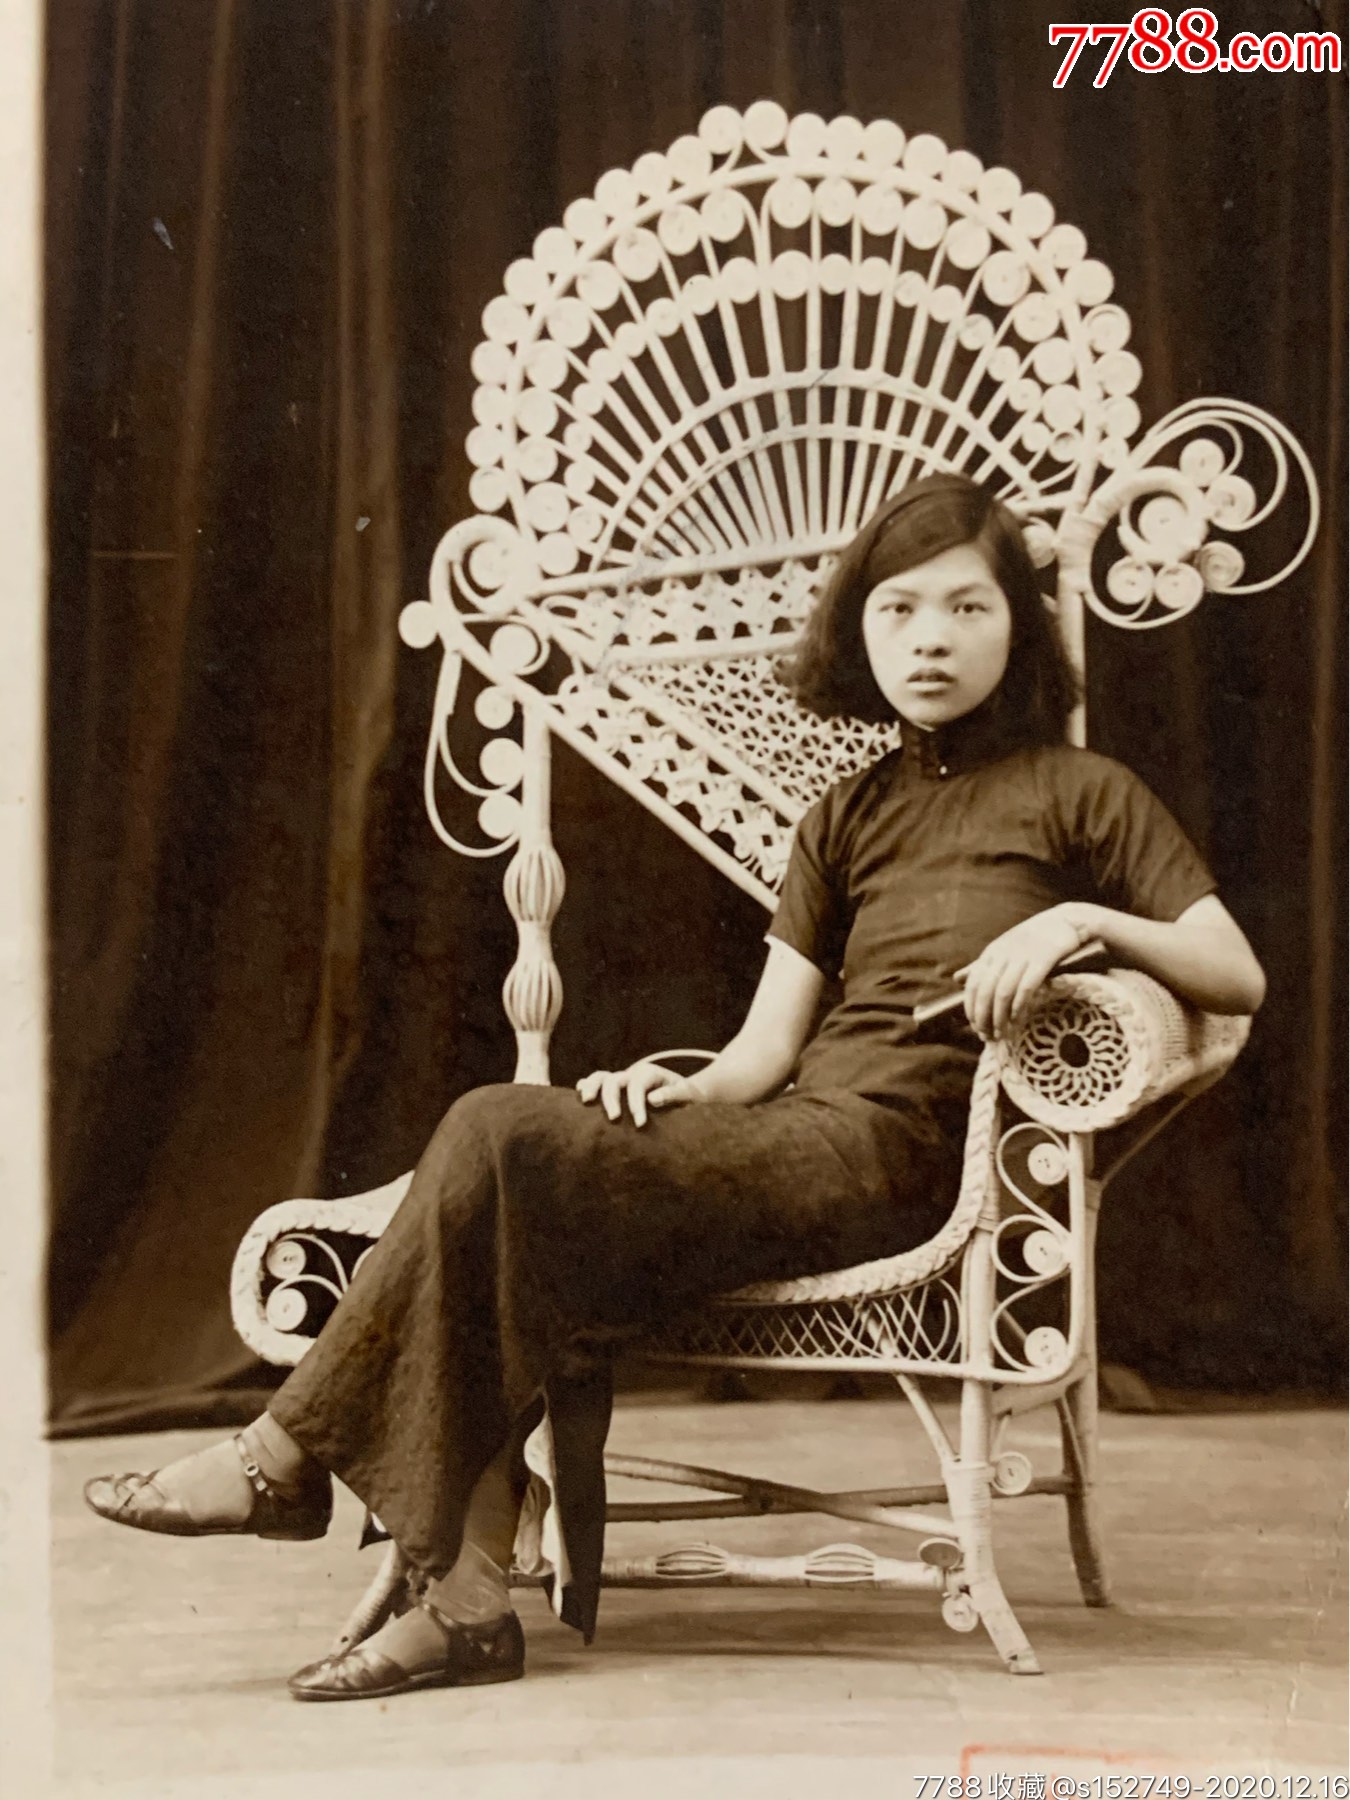 民国时期,旗袍摆拍藤椅少女照少见造型藤椅